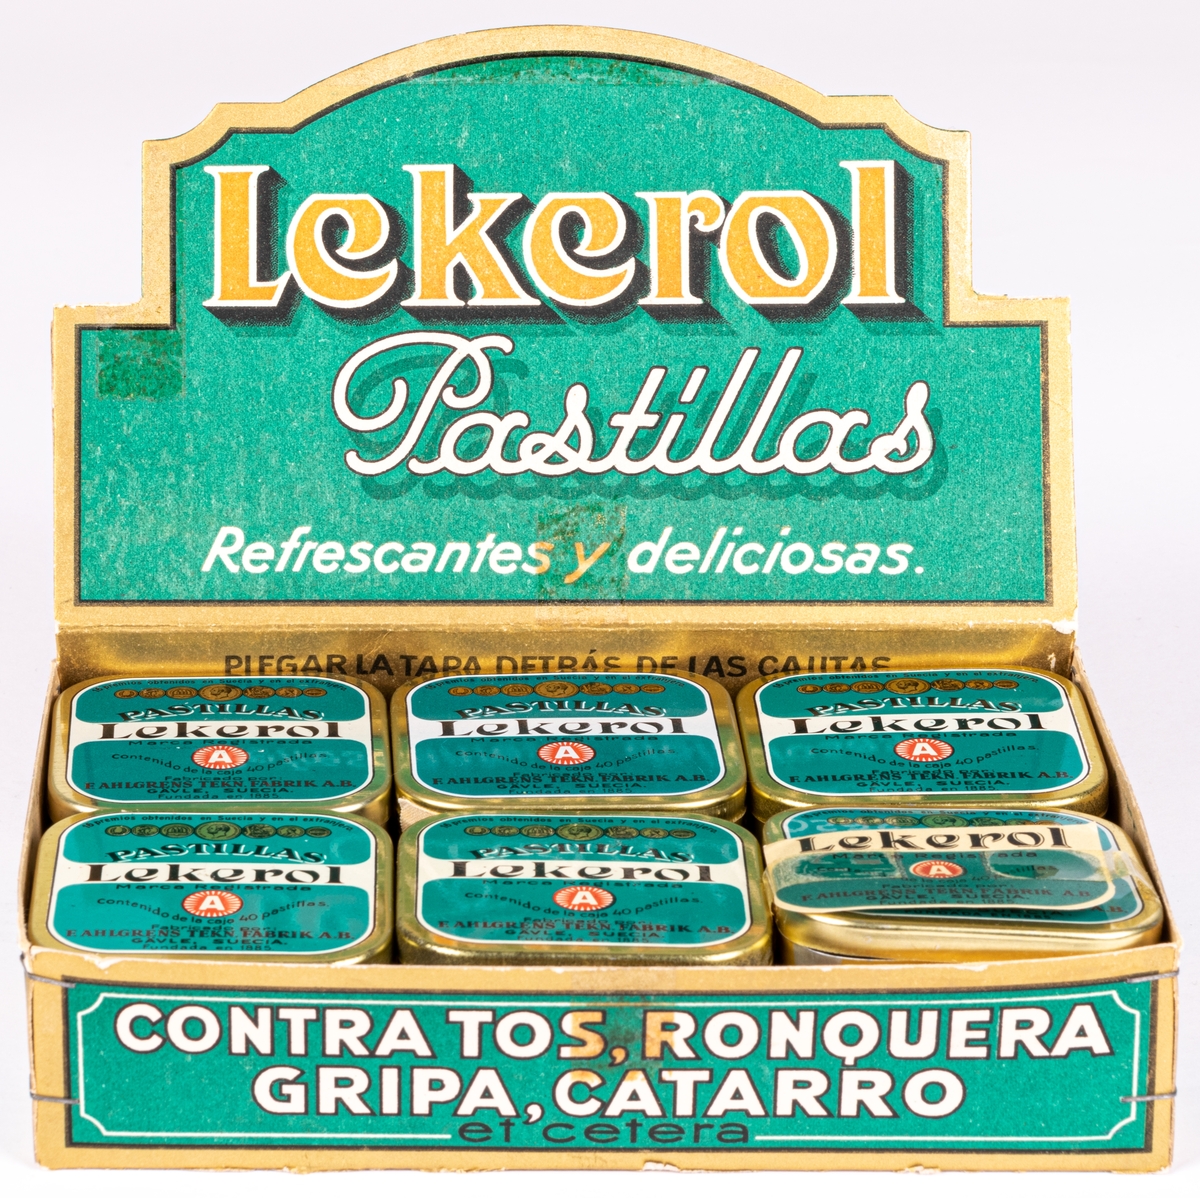 Reklamställ i papp för tablettaskar, innehållande tolv tablettaskar i plåt med texten: "LEKEROL PASTILLAS REFRESCANTES Y DELICIOSAS."